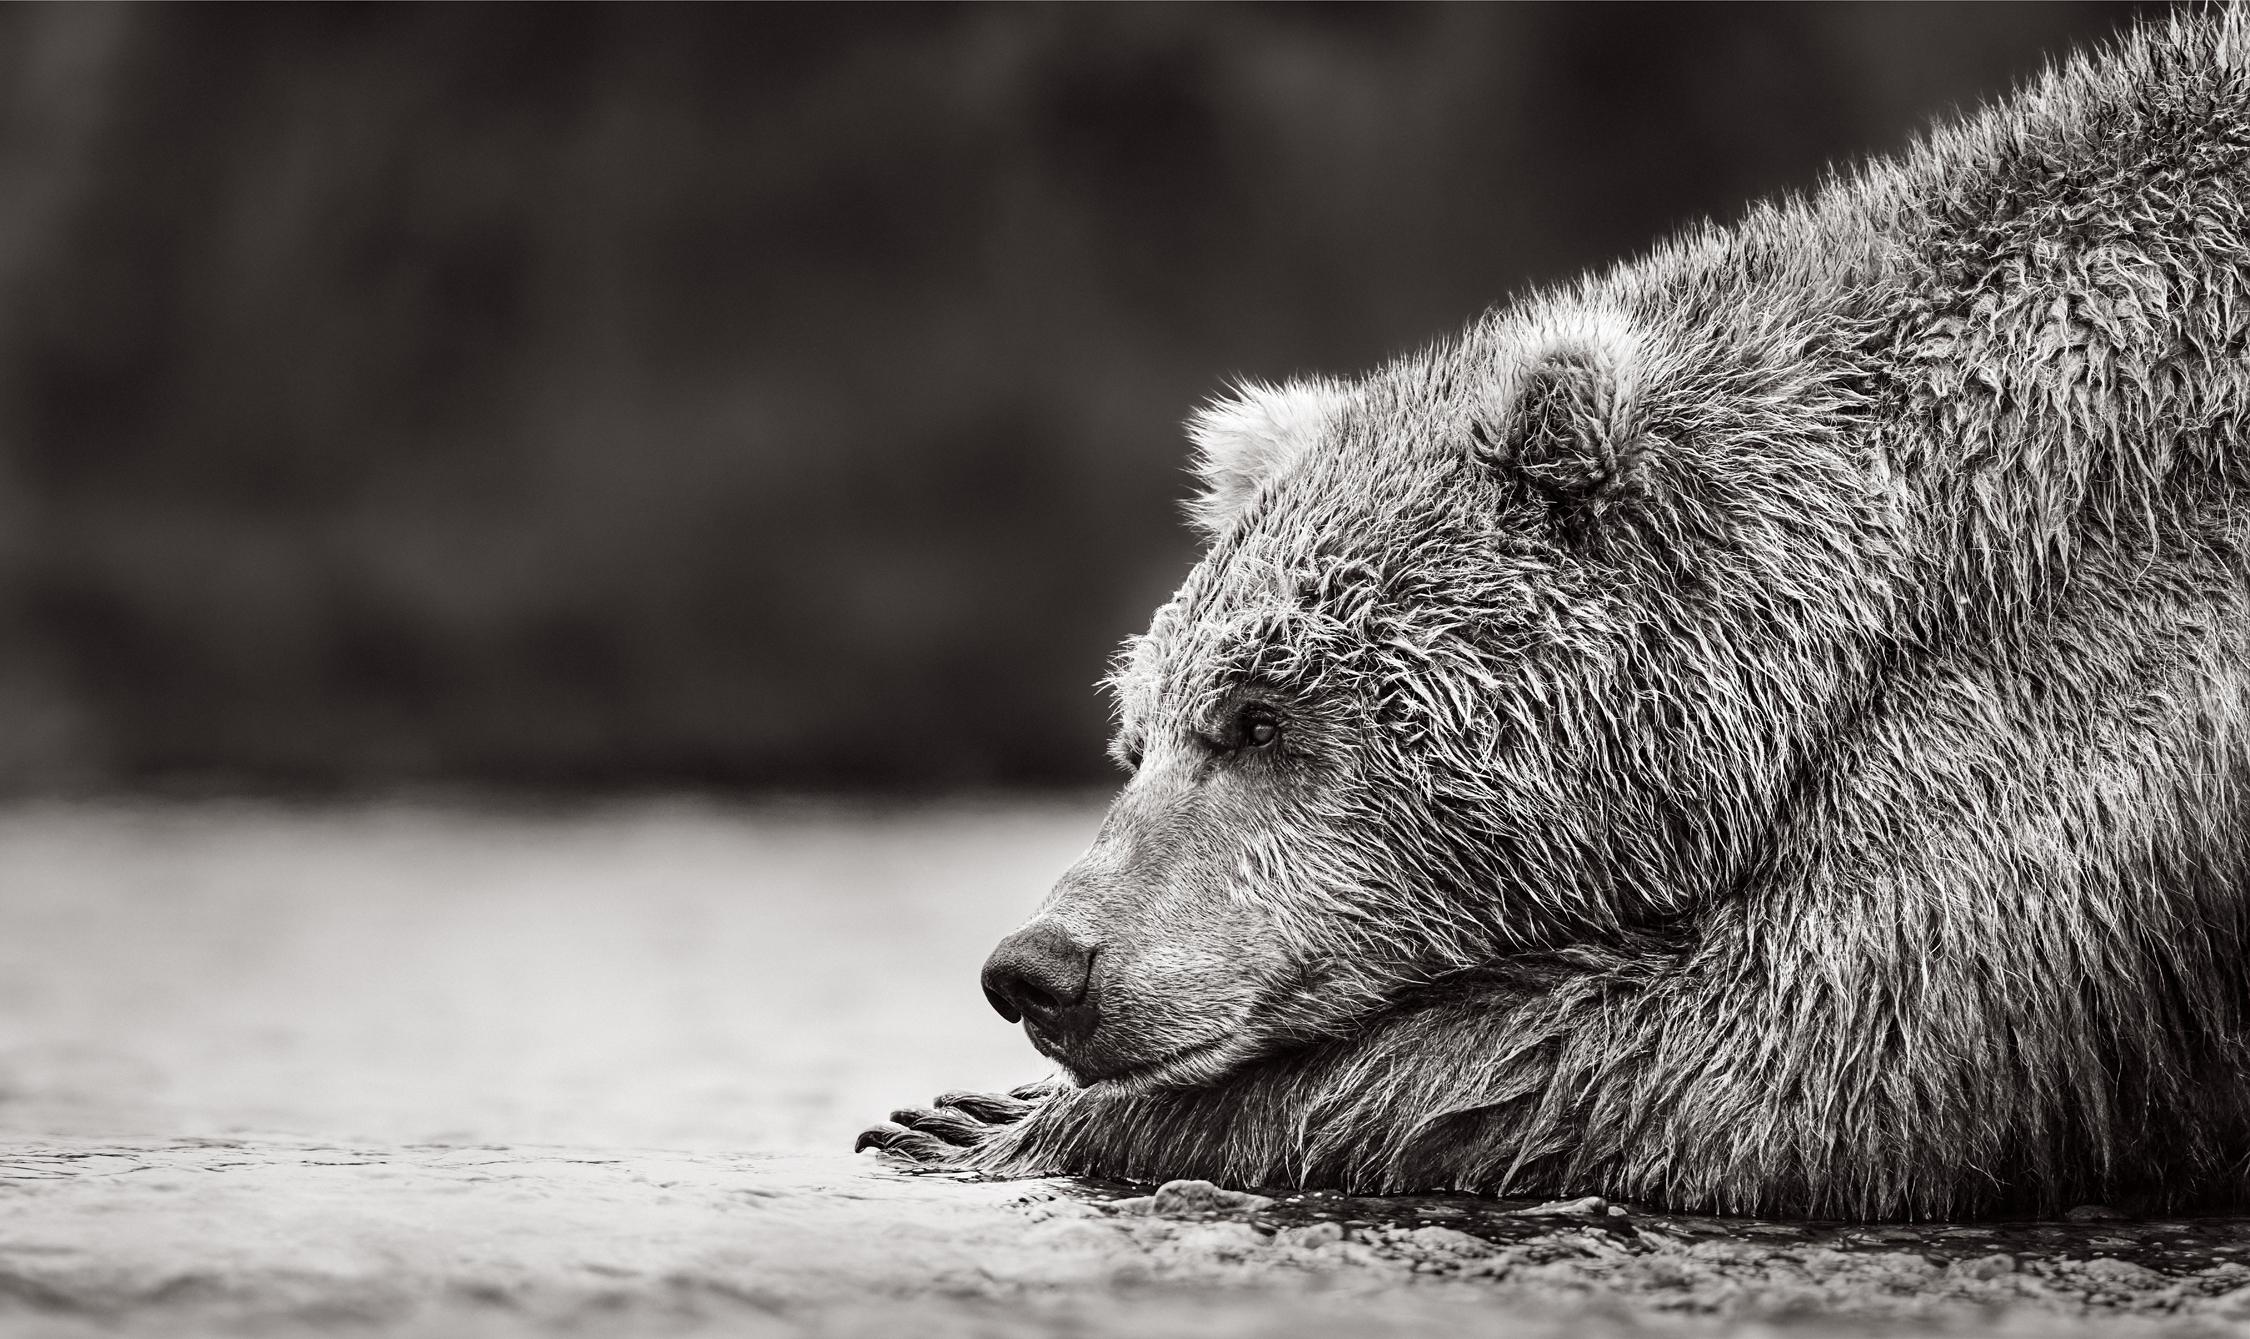 Black and White Photograph Drew Doggett - L'ours brun se repose sur ses pattes avant